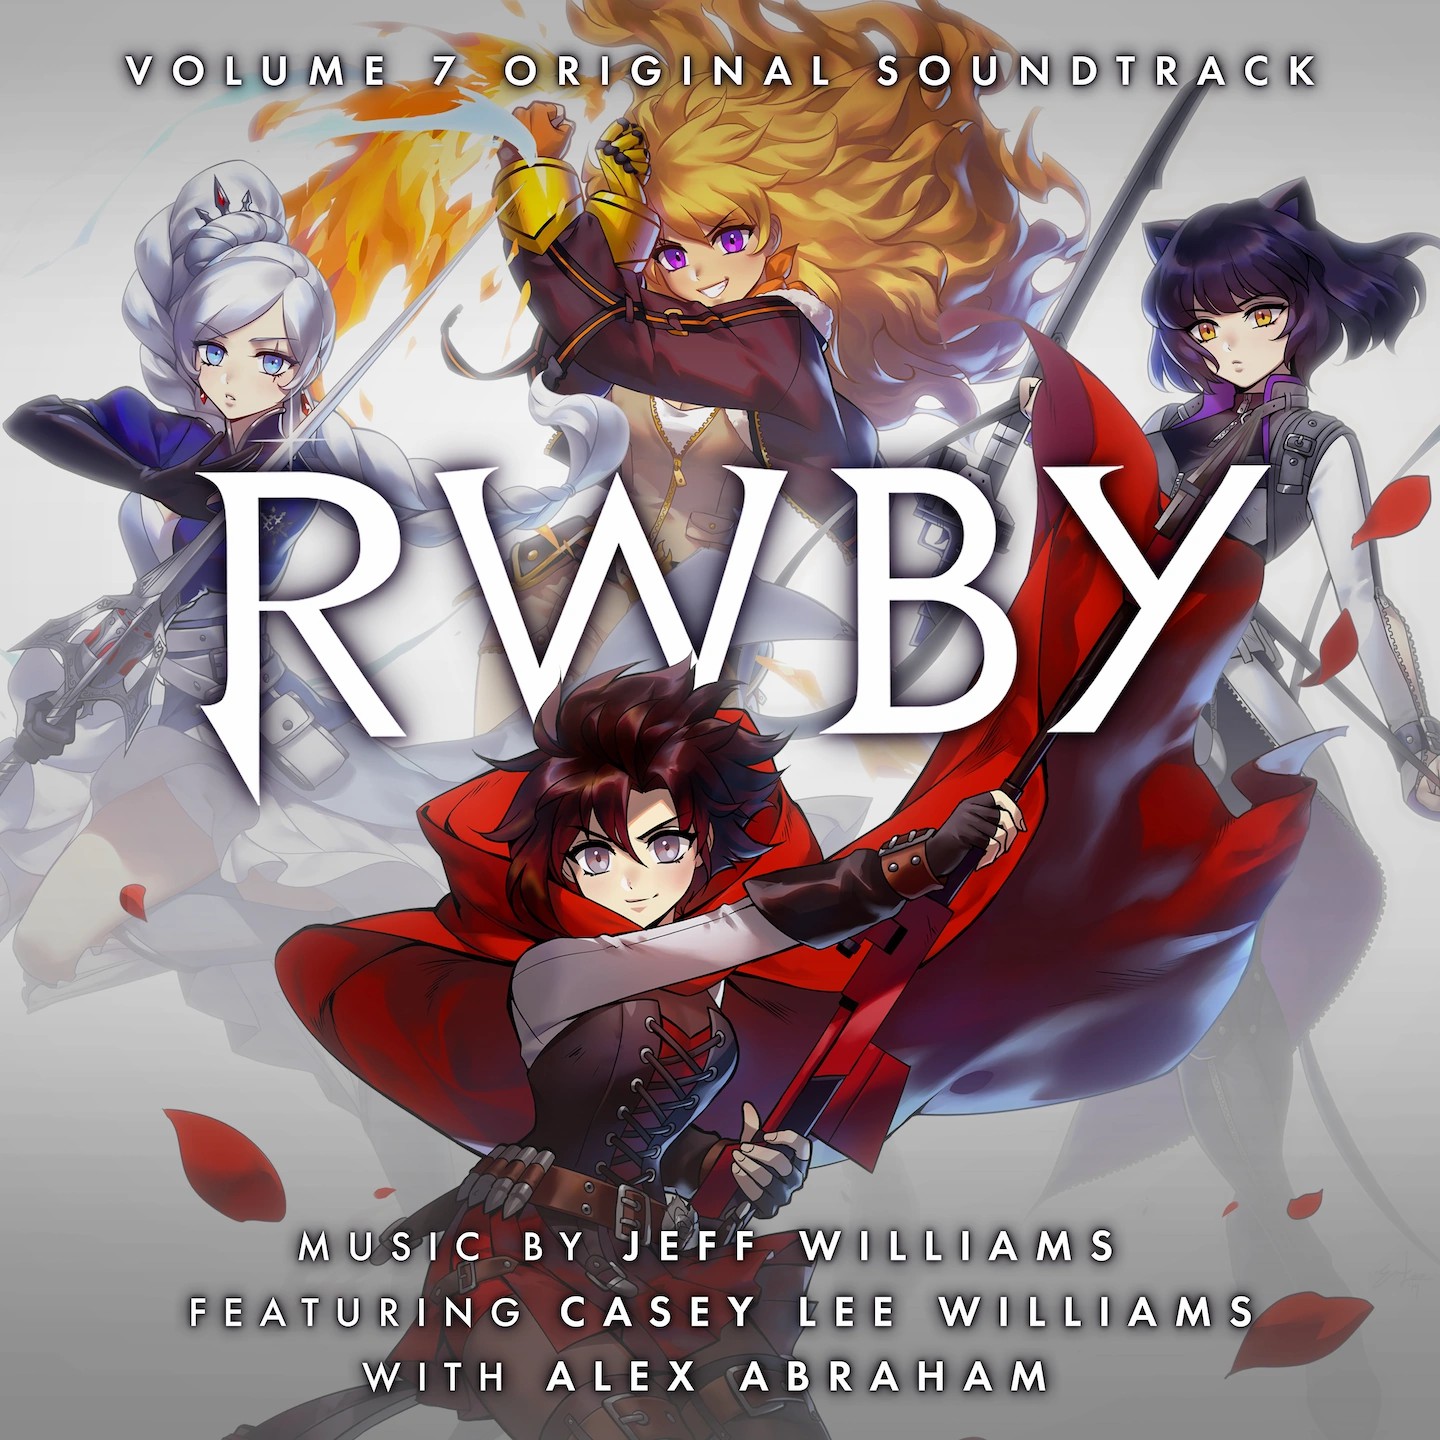 Rwby Vol 7 Soundtrack Cover.jpg